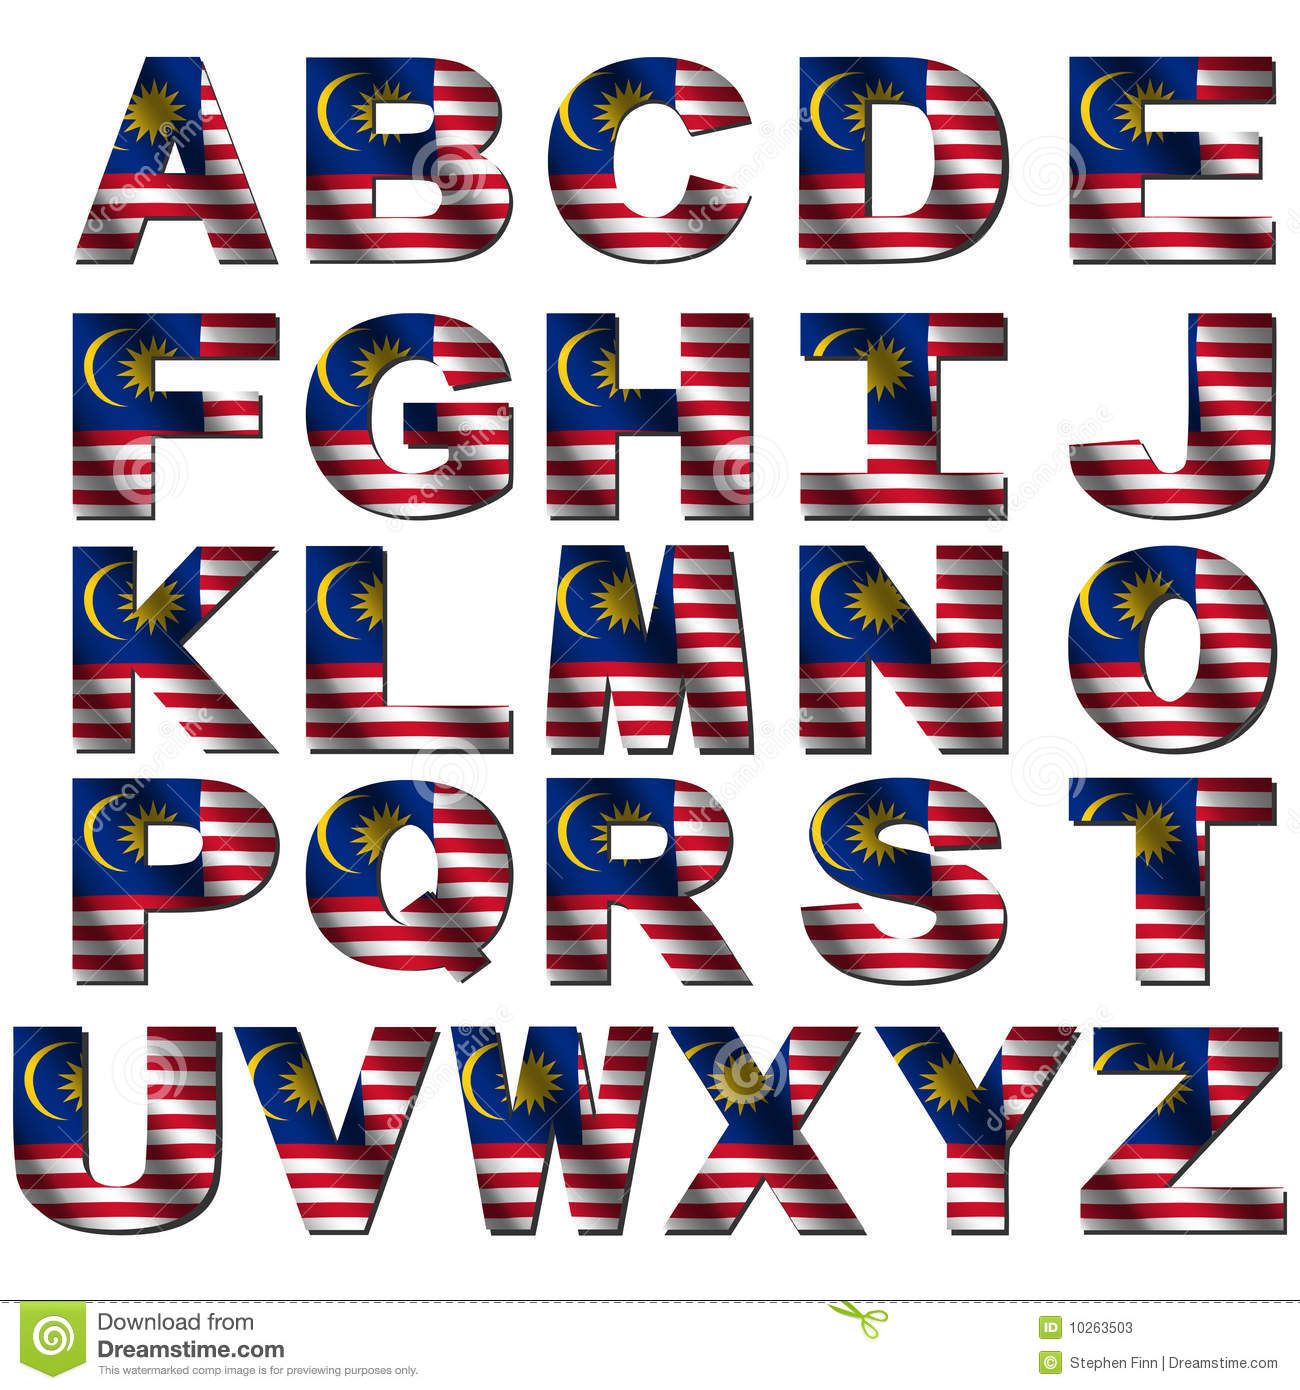 17-patriotic-letter-fonts-images-american-flag-font-american-flag